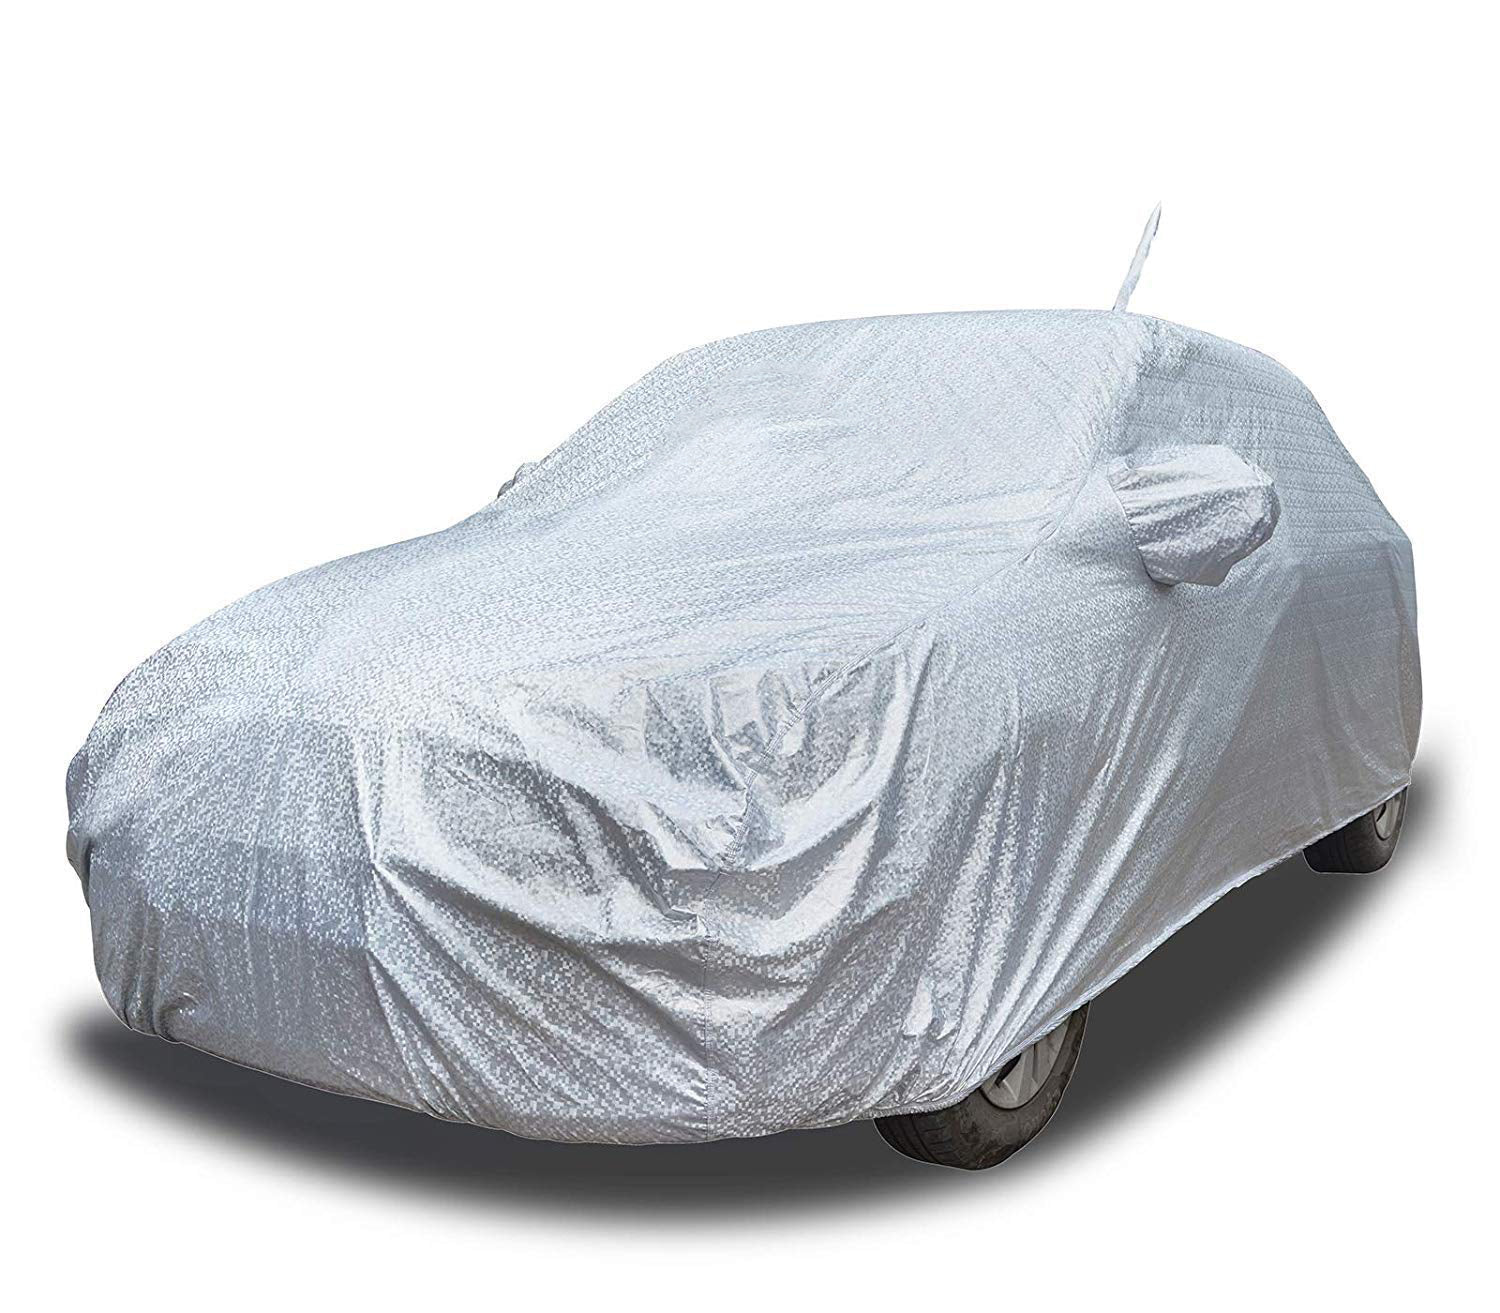 Buy BMW 5 Series Waterproof Car Cover AERO Silver Online